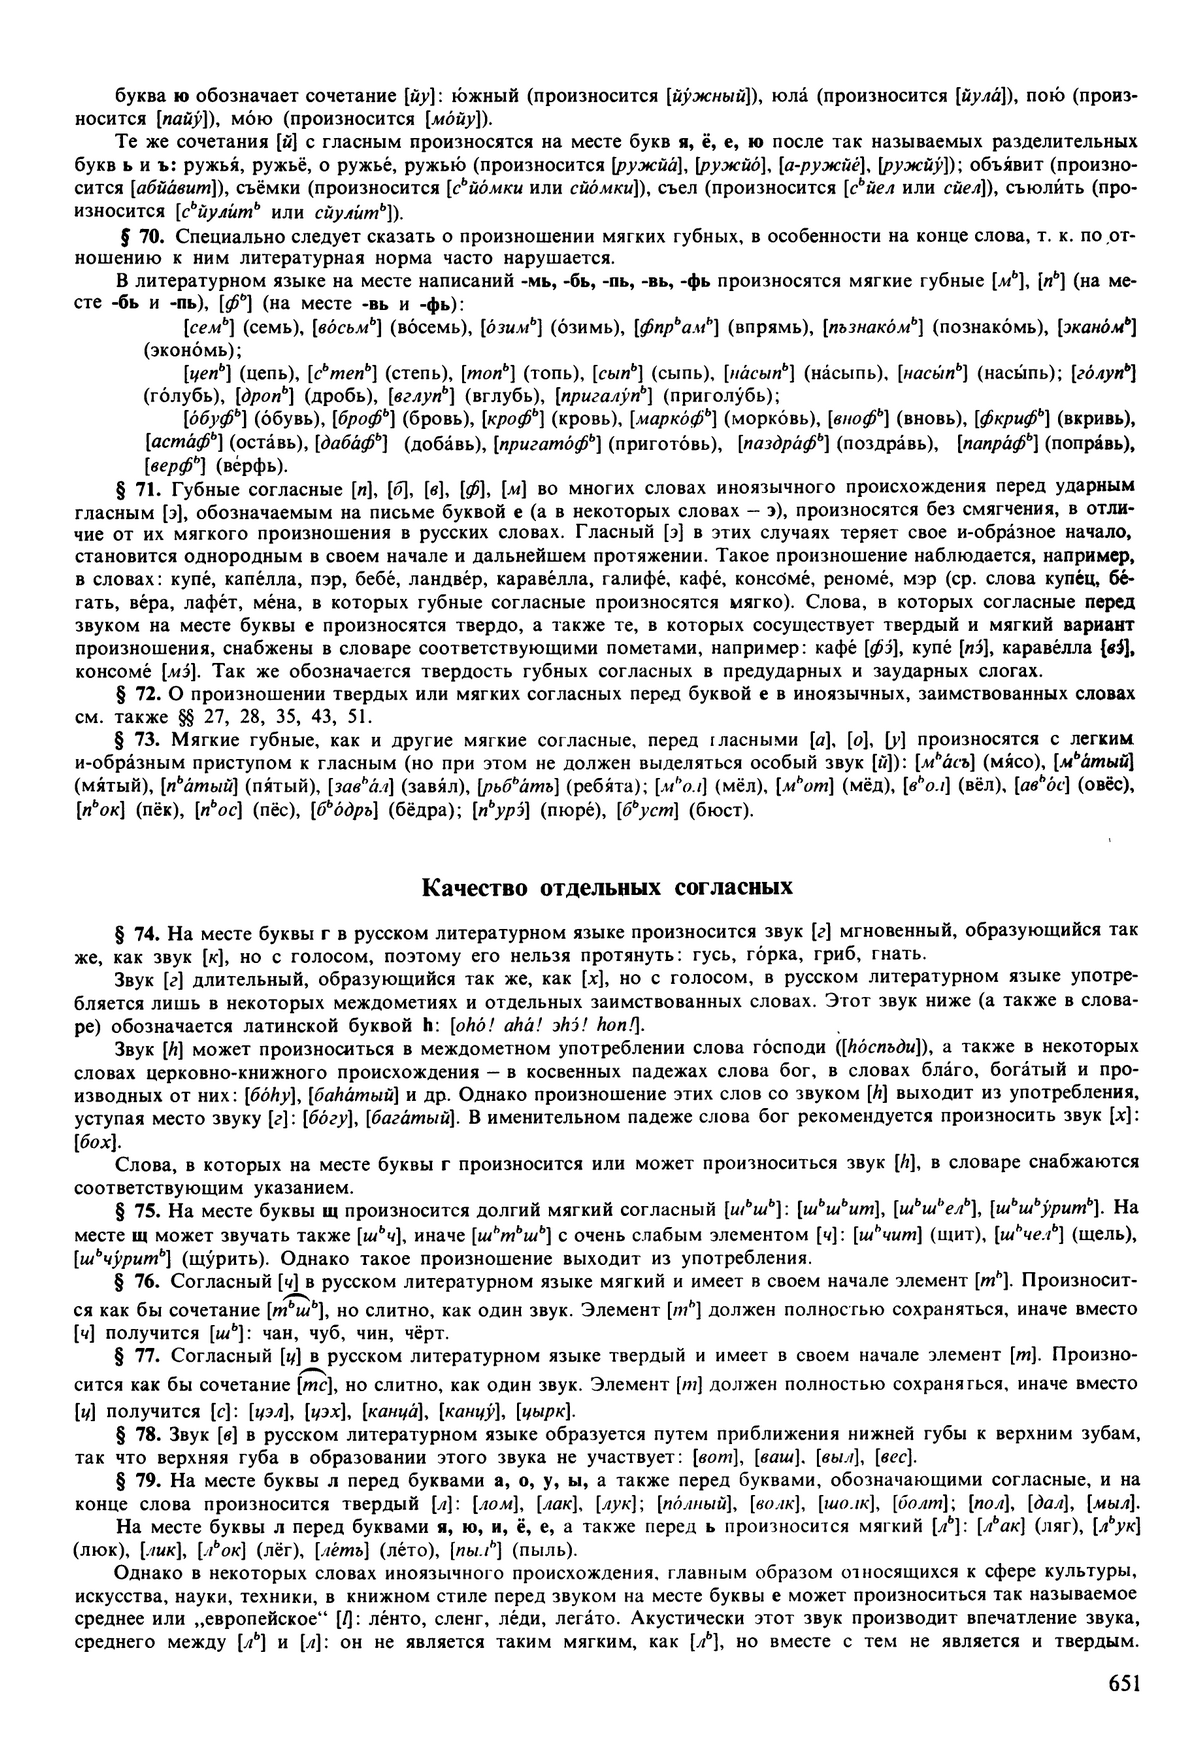 Фотокопия pdf / скан страницы 651 орфоэпического словаря под редакцией Аванесова (5 издание, 1989 год)